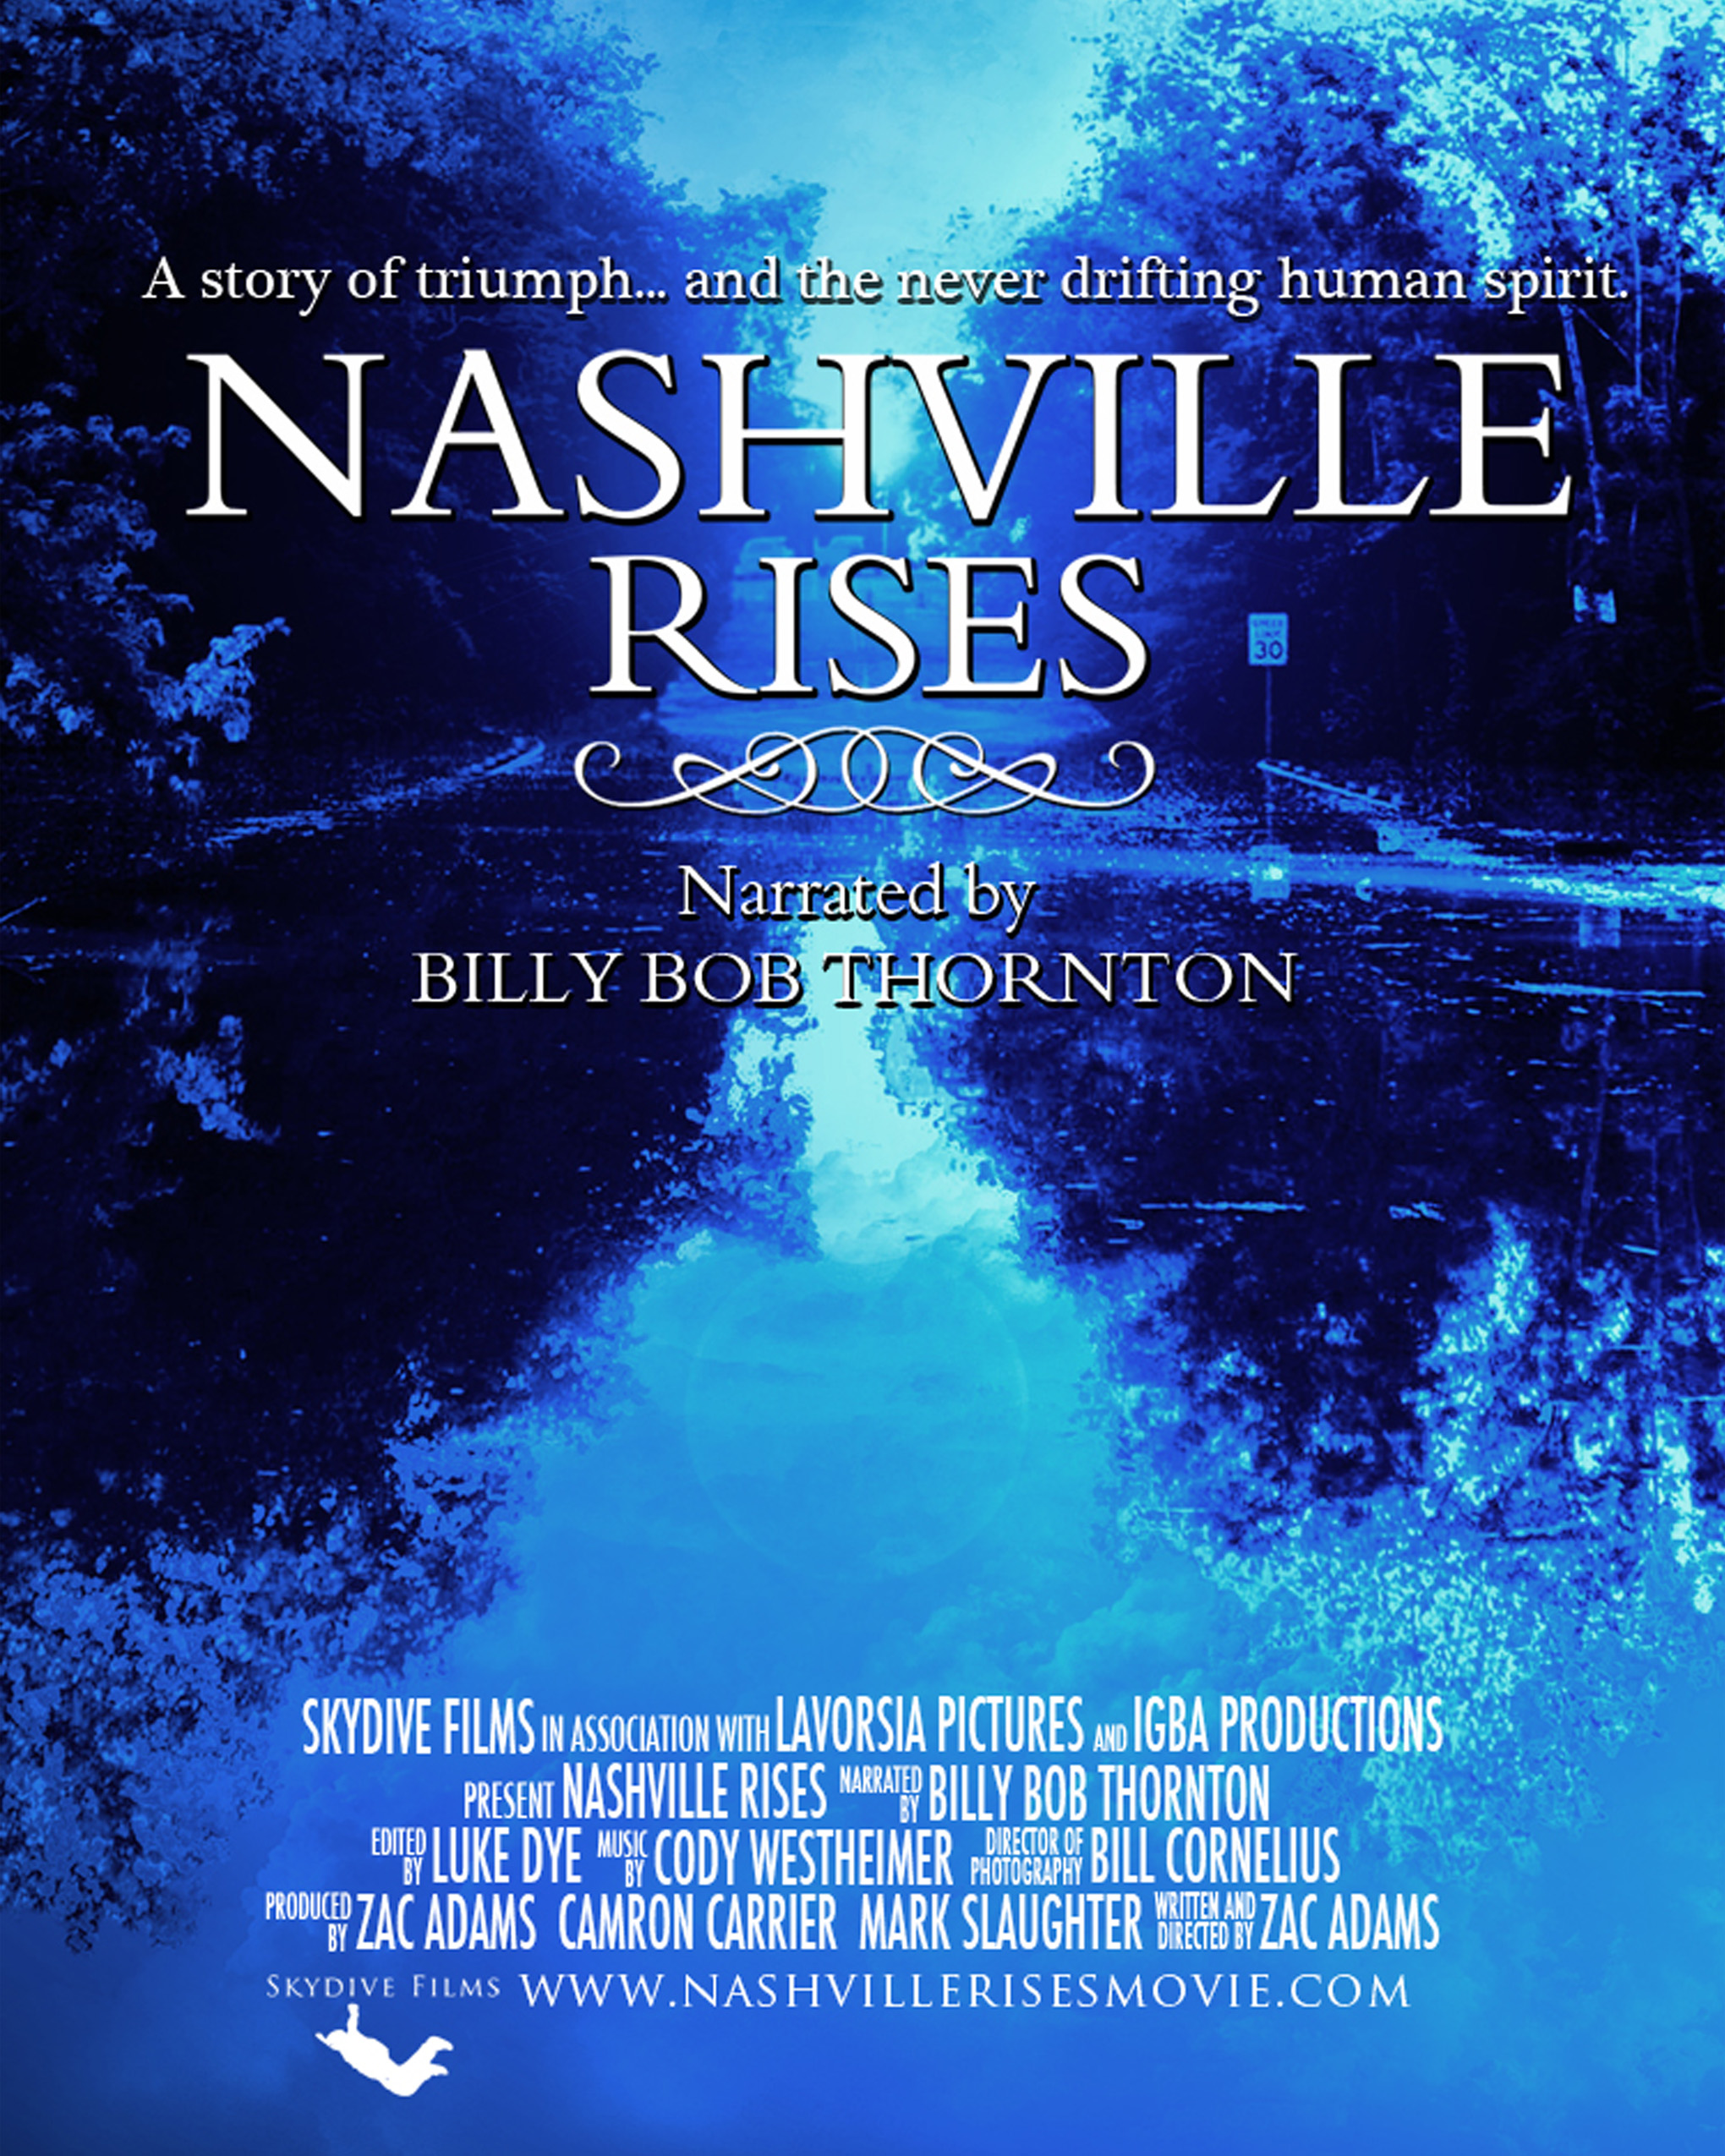 Nashville Rises documentary poster